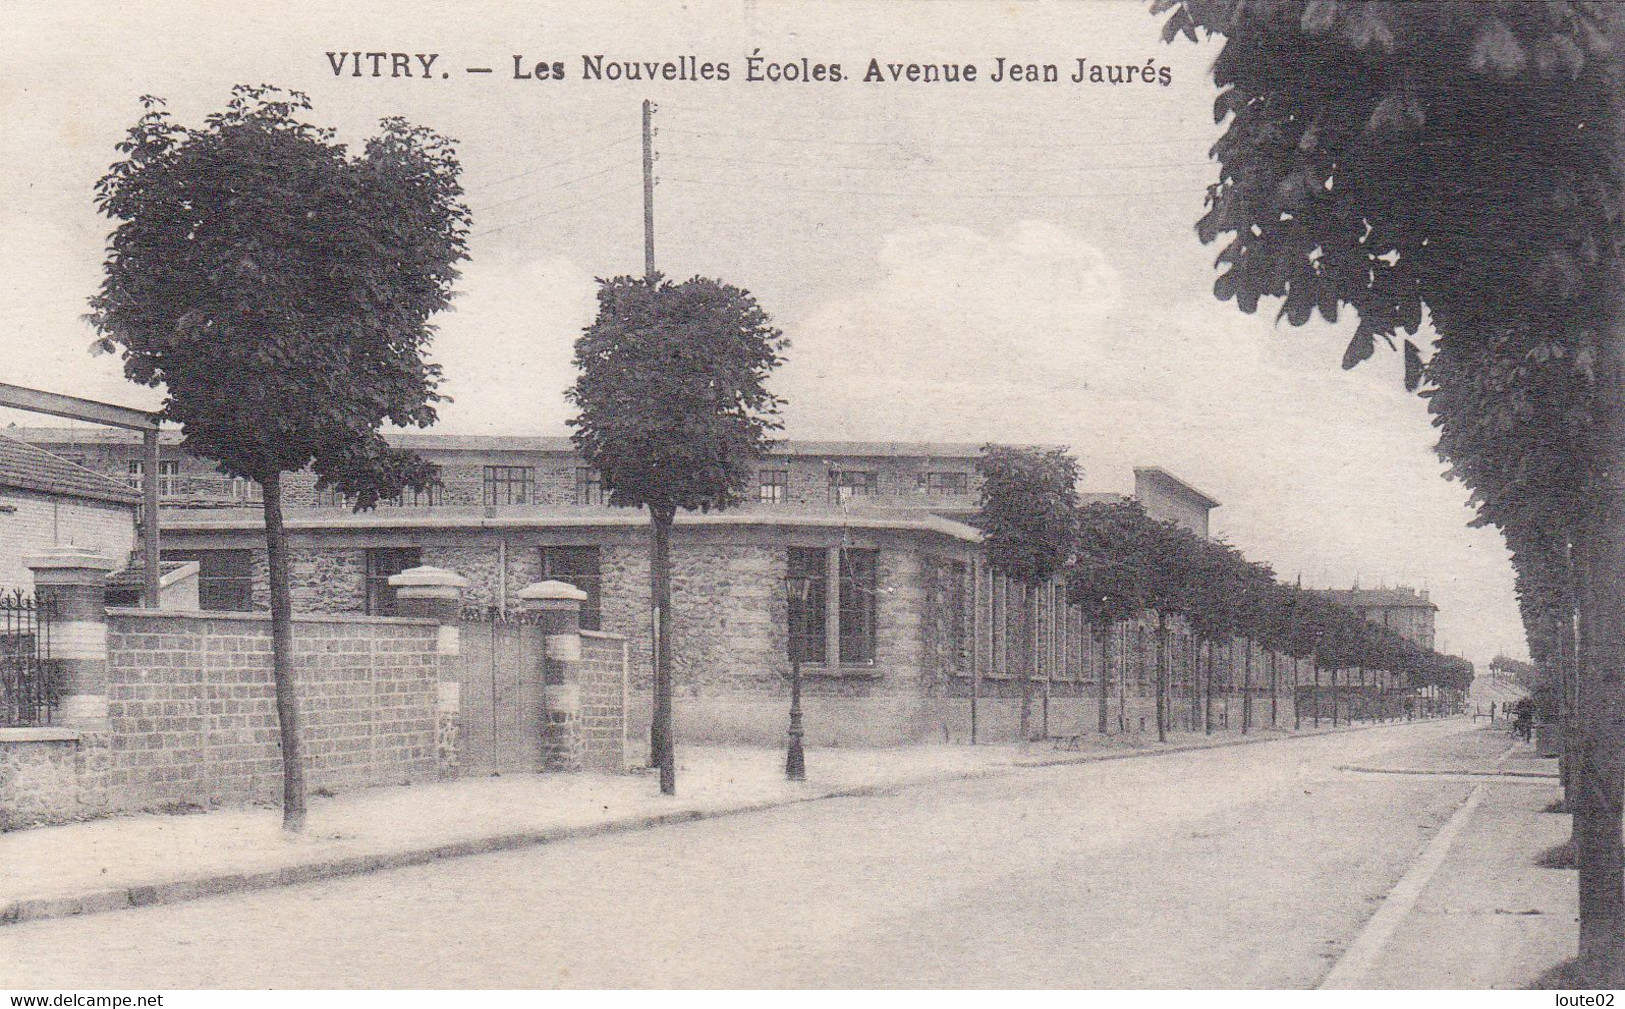 VITRY LES NOUVELLES  ECOLES  AVENUE JEAN JAURES - Vitry Sur Seine